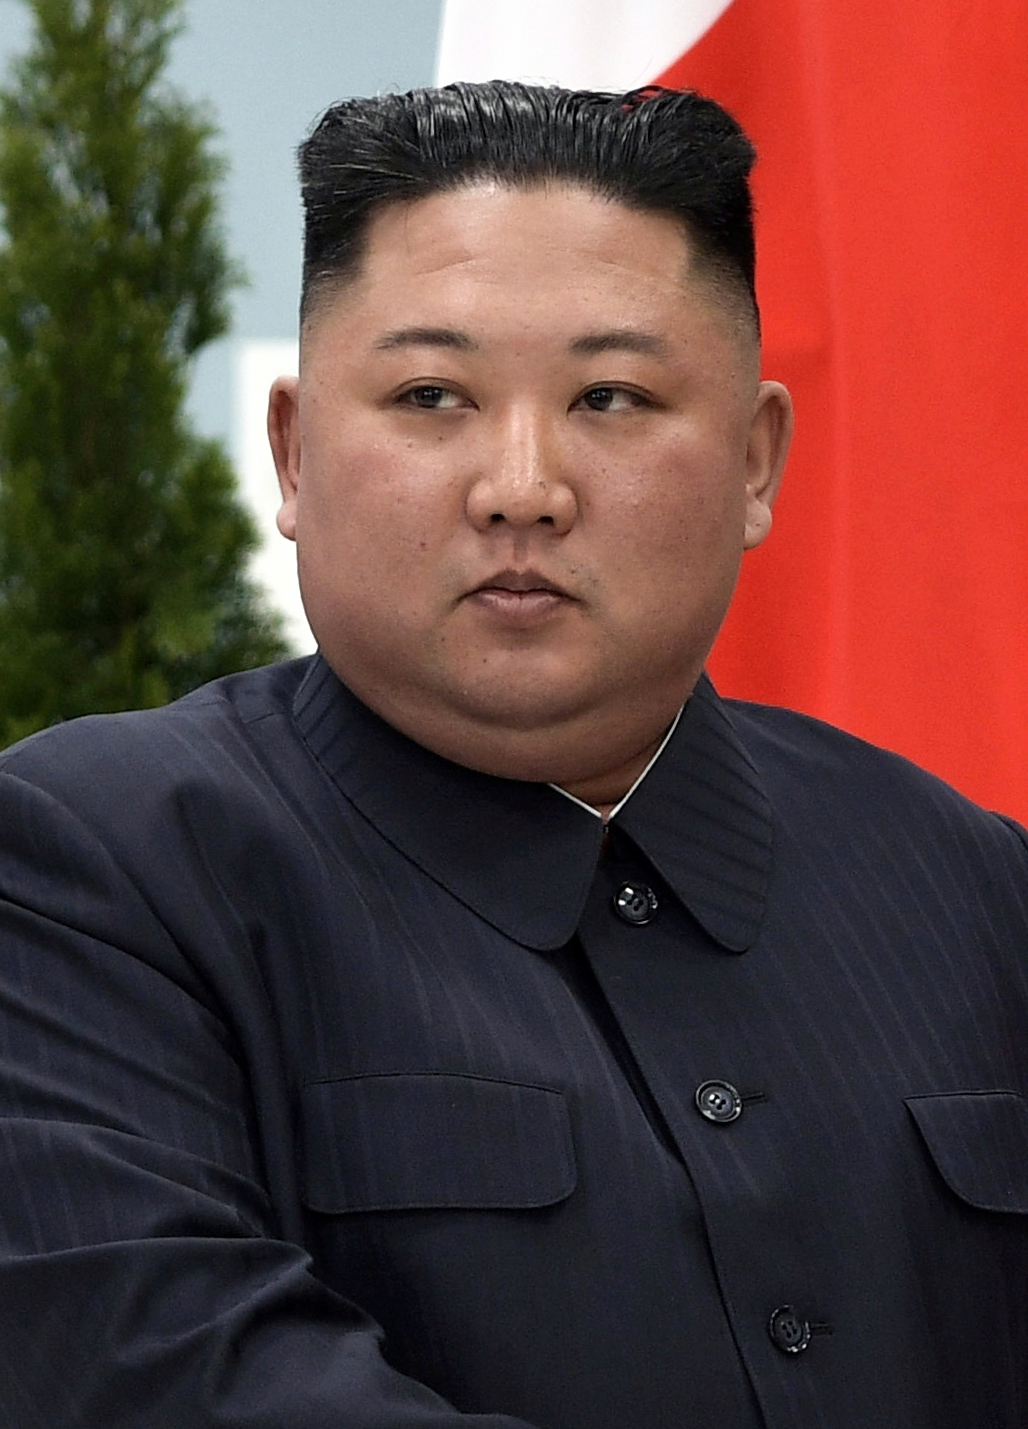 Kim_Jong-un_April_2019_(cropped).jpg